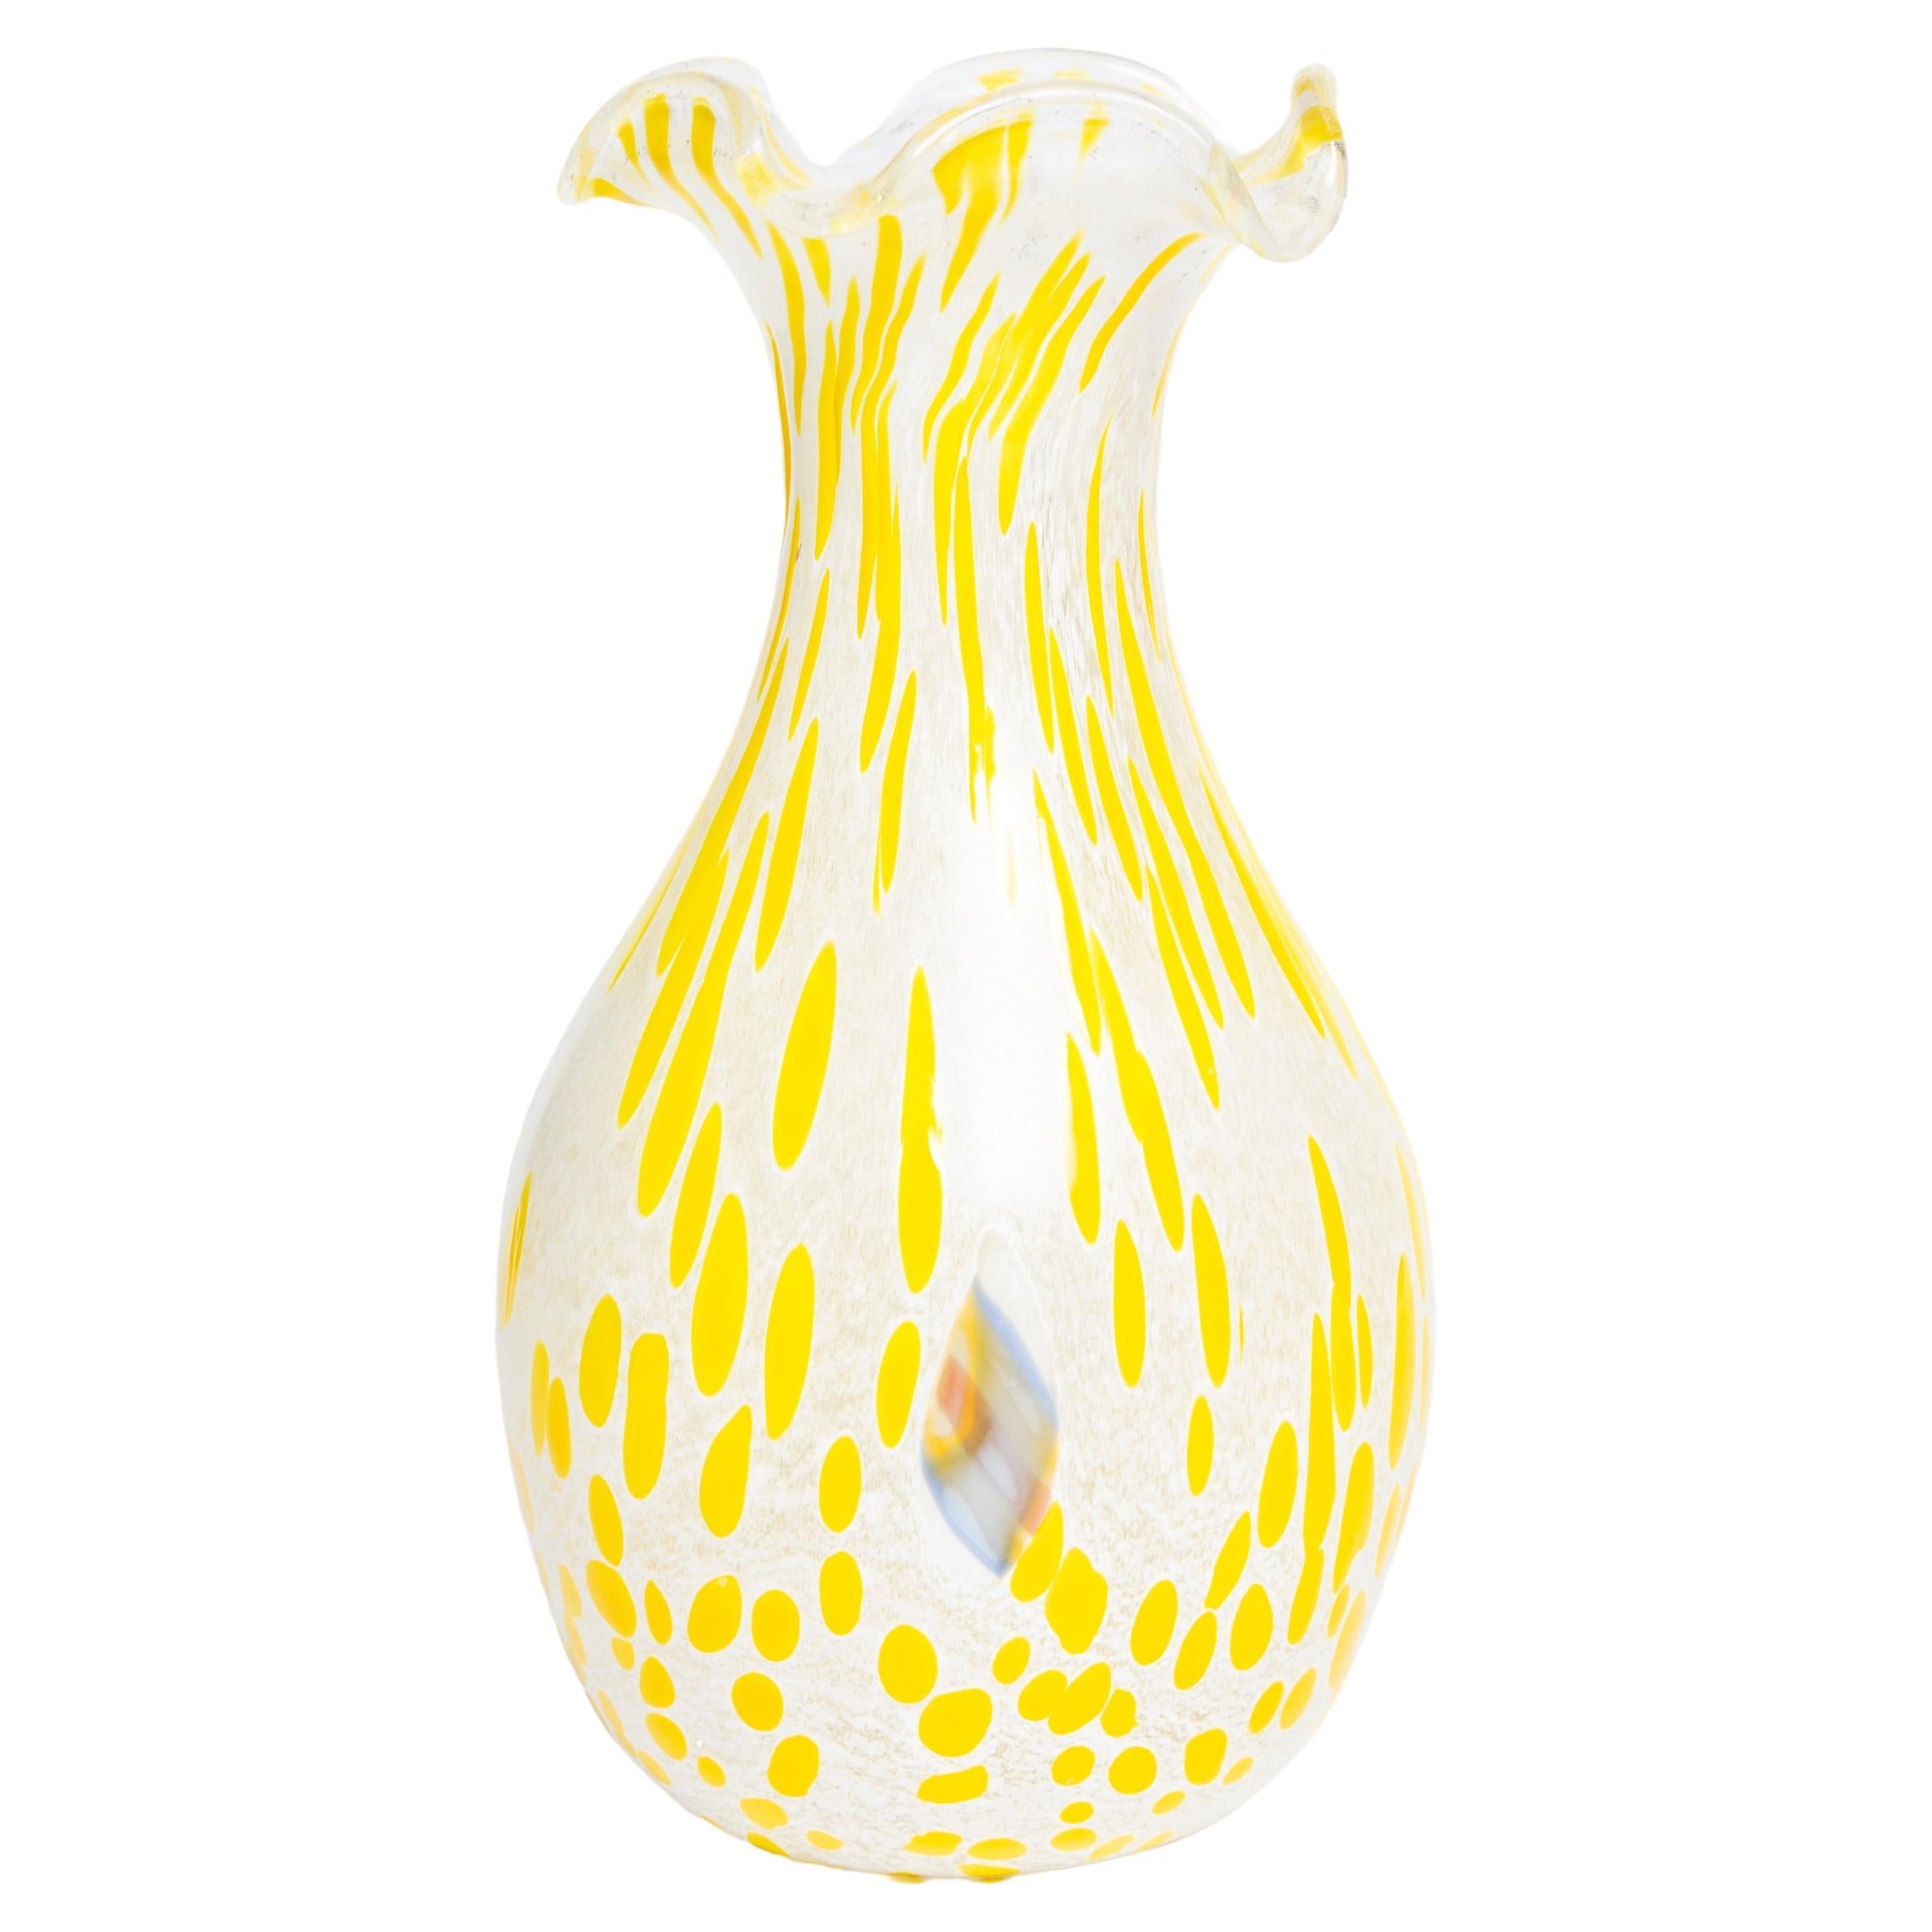 Petit vase de Murano vintage à pois jaunes, Italie, années 1960